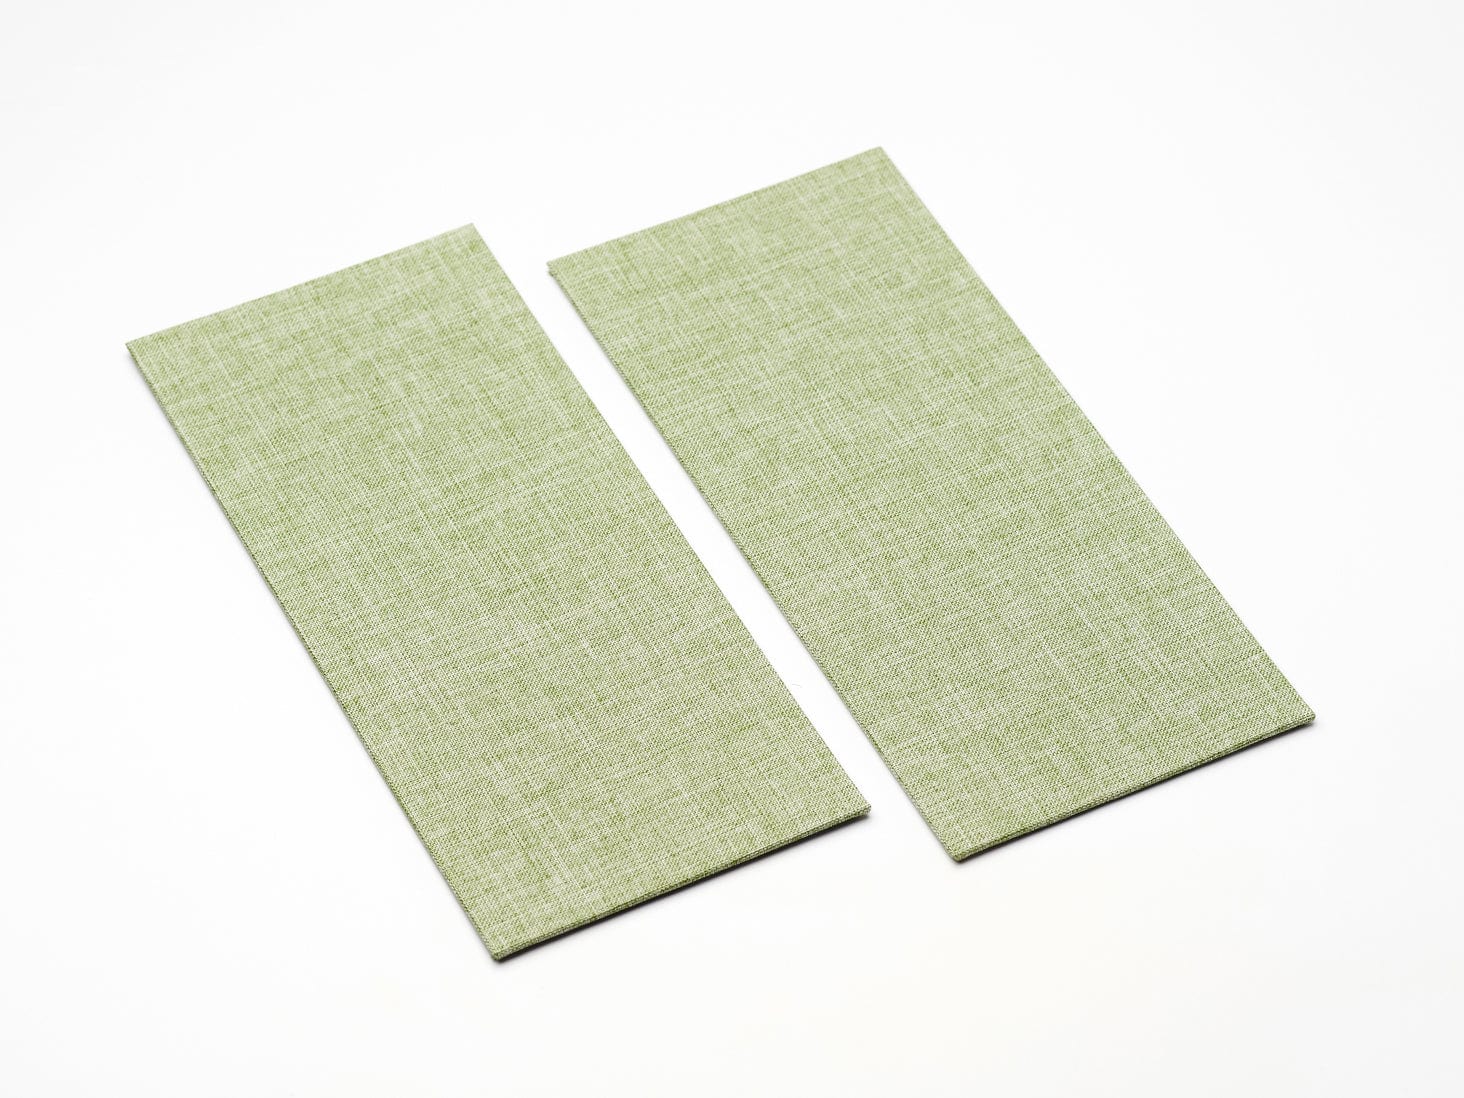 Sample Sage Green Linen FAB Sides® - A4 Deep